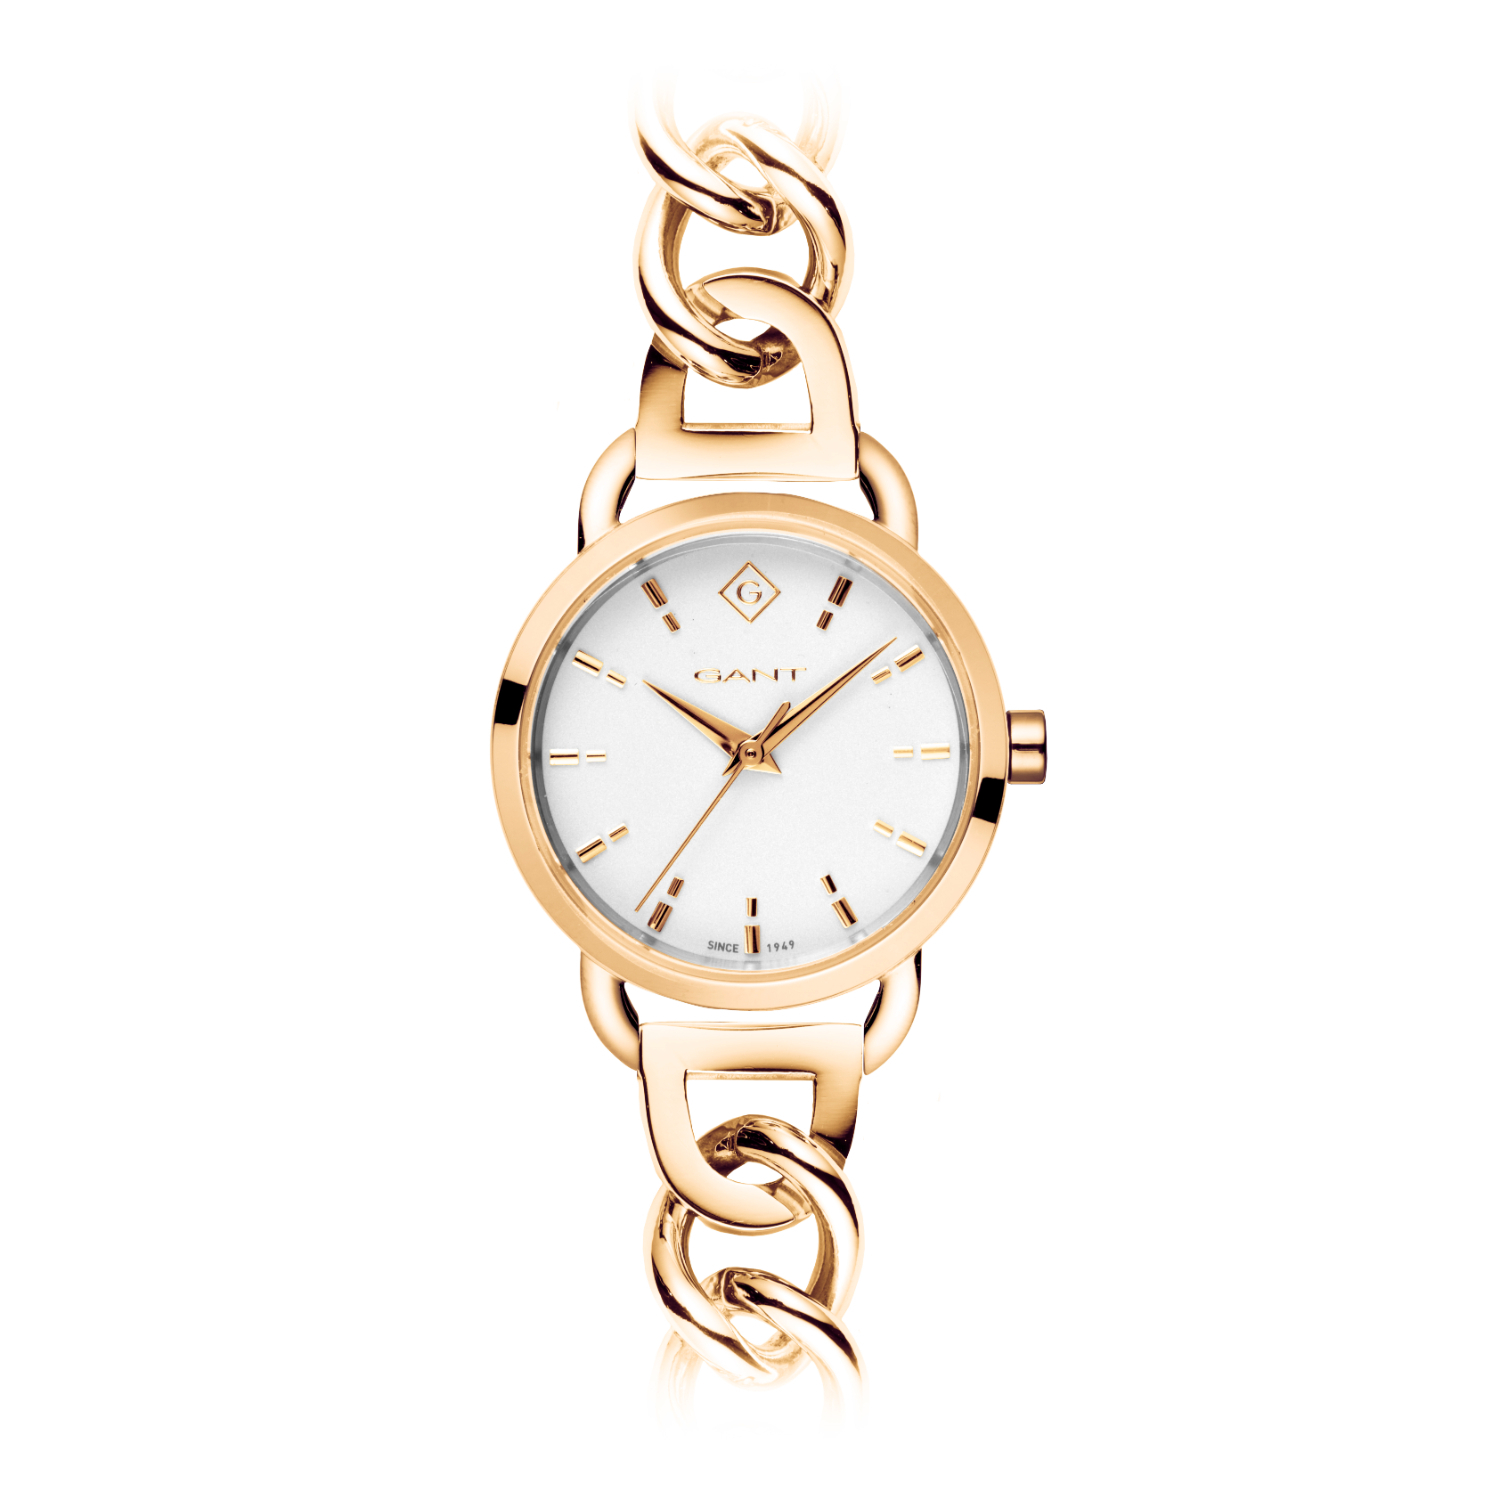 Γυναικείο ρολόι GANT από χρυσό ανοξείδωτο ατσάλι με λευκό καντράν και μπρασελέ.